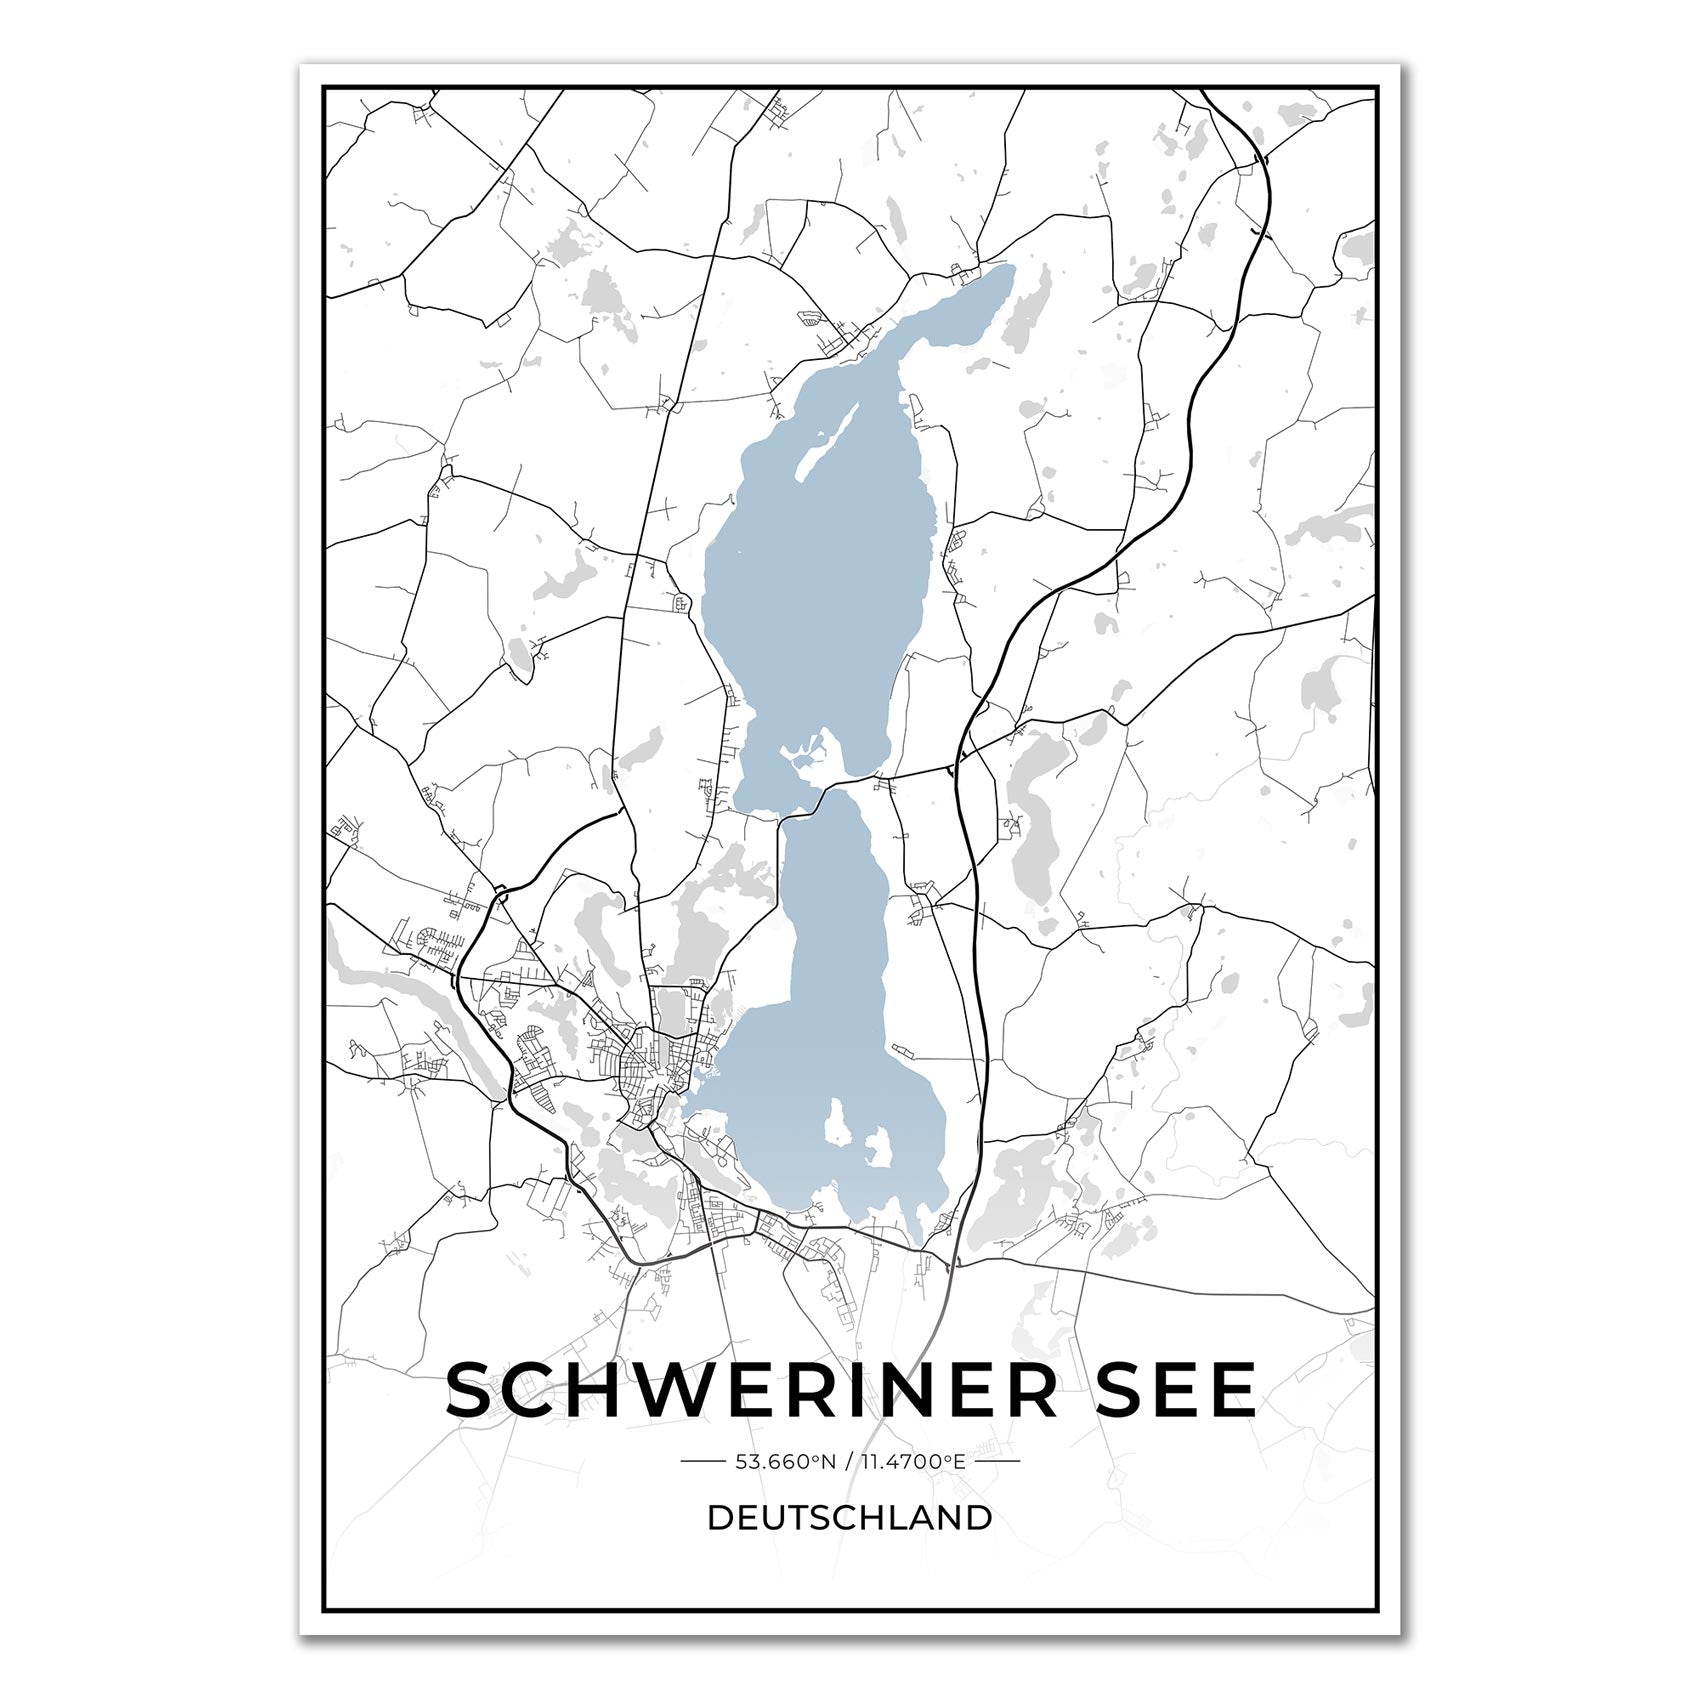 See Karten Poster - Schweriner See